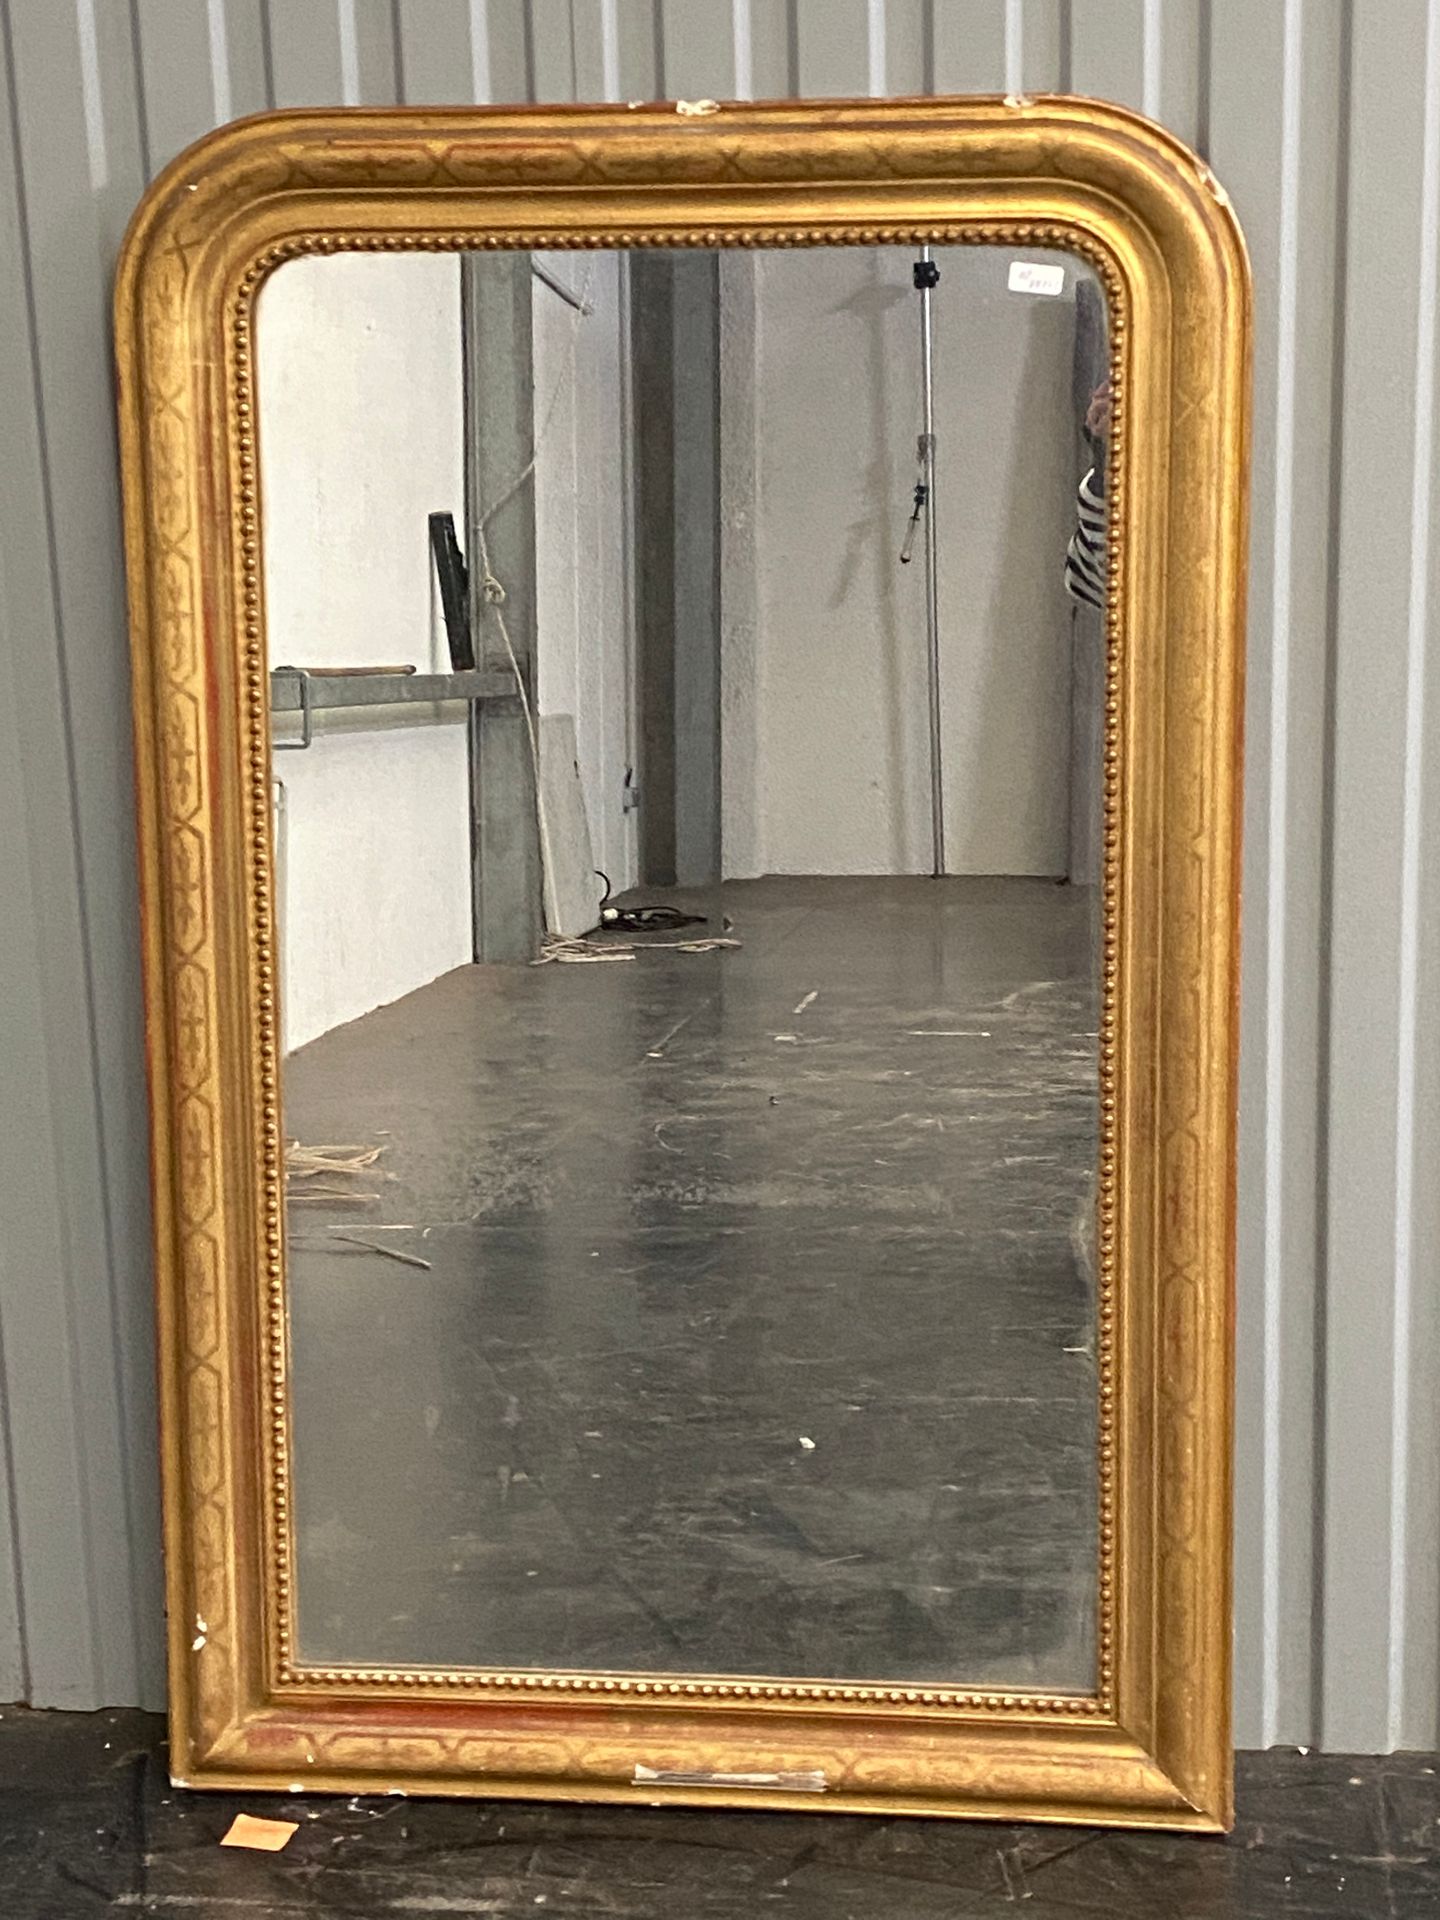 Null Espejo de sobremesa con marco dorado.

Período de Luis Felipe

134 x 85 cm